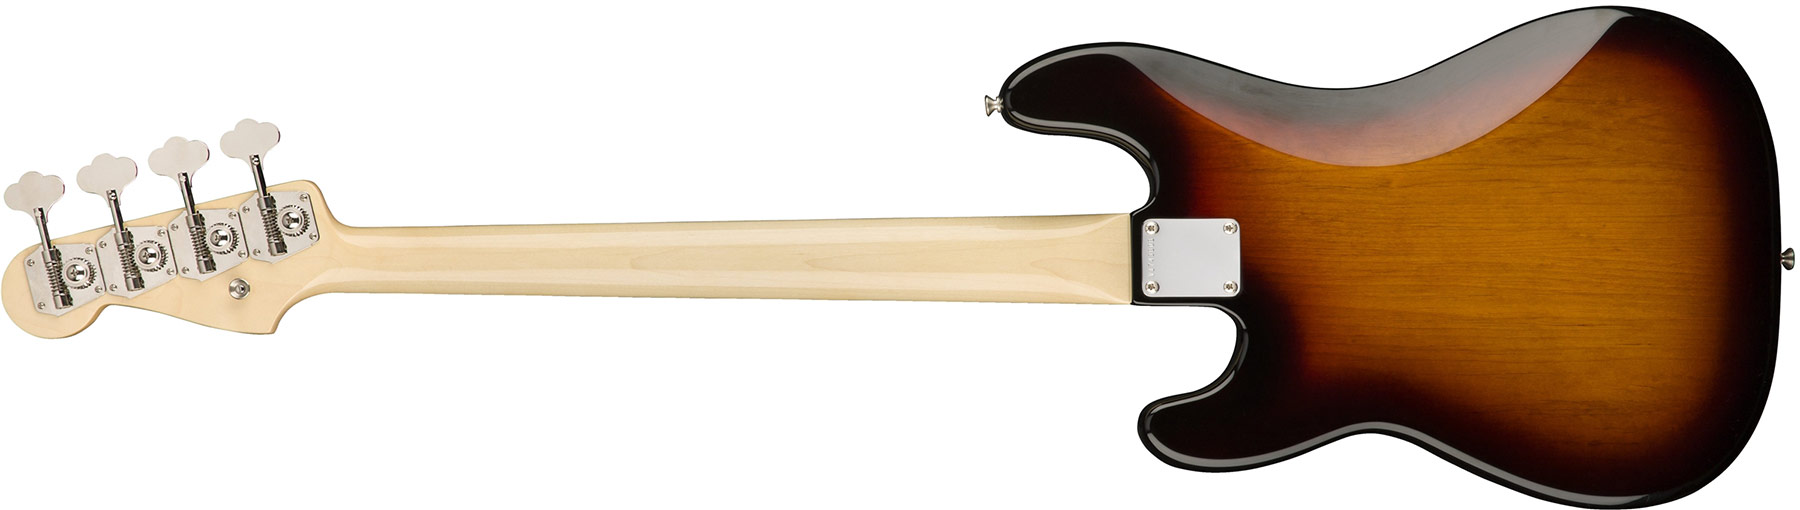 Fender Precision Bass '60s American Original Usa Rw - 3-color Sunburst - Solidbody E-bass - Variation 3